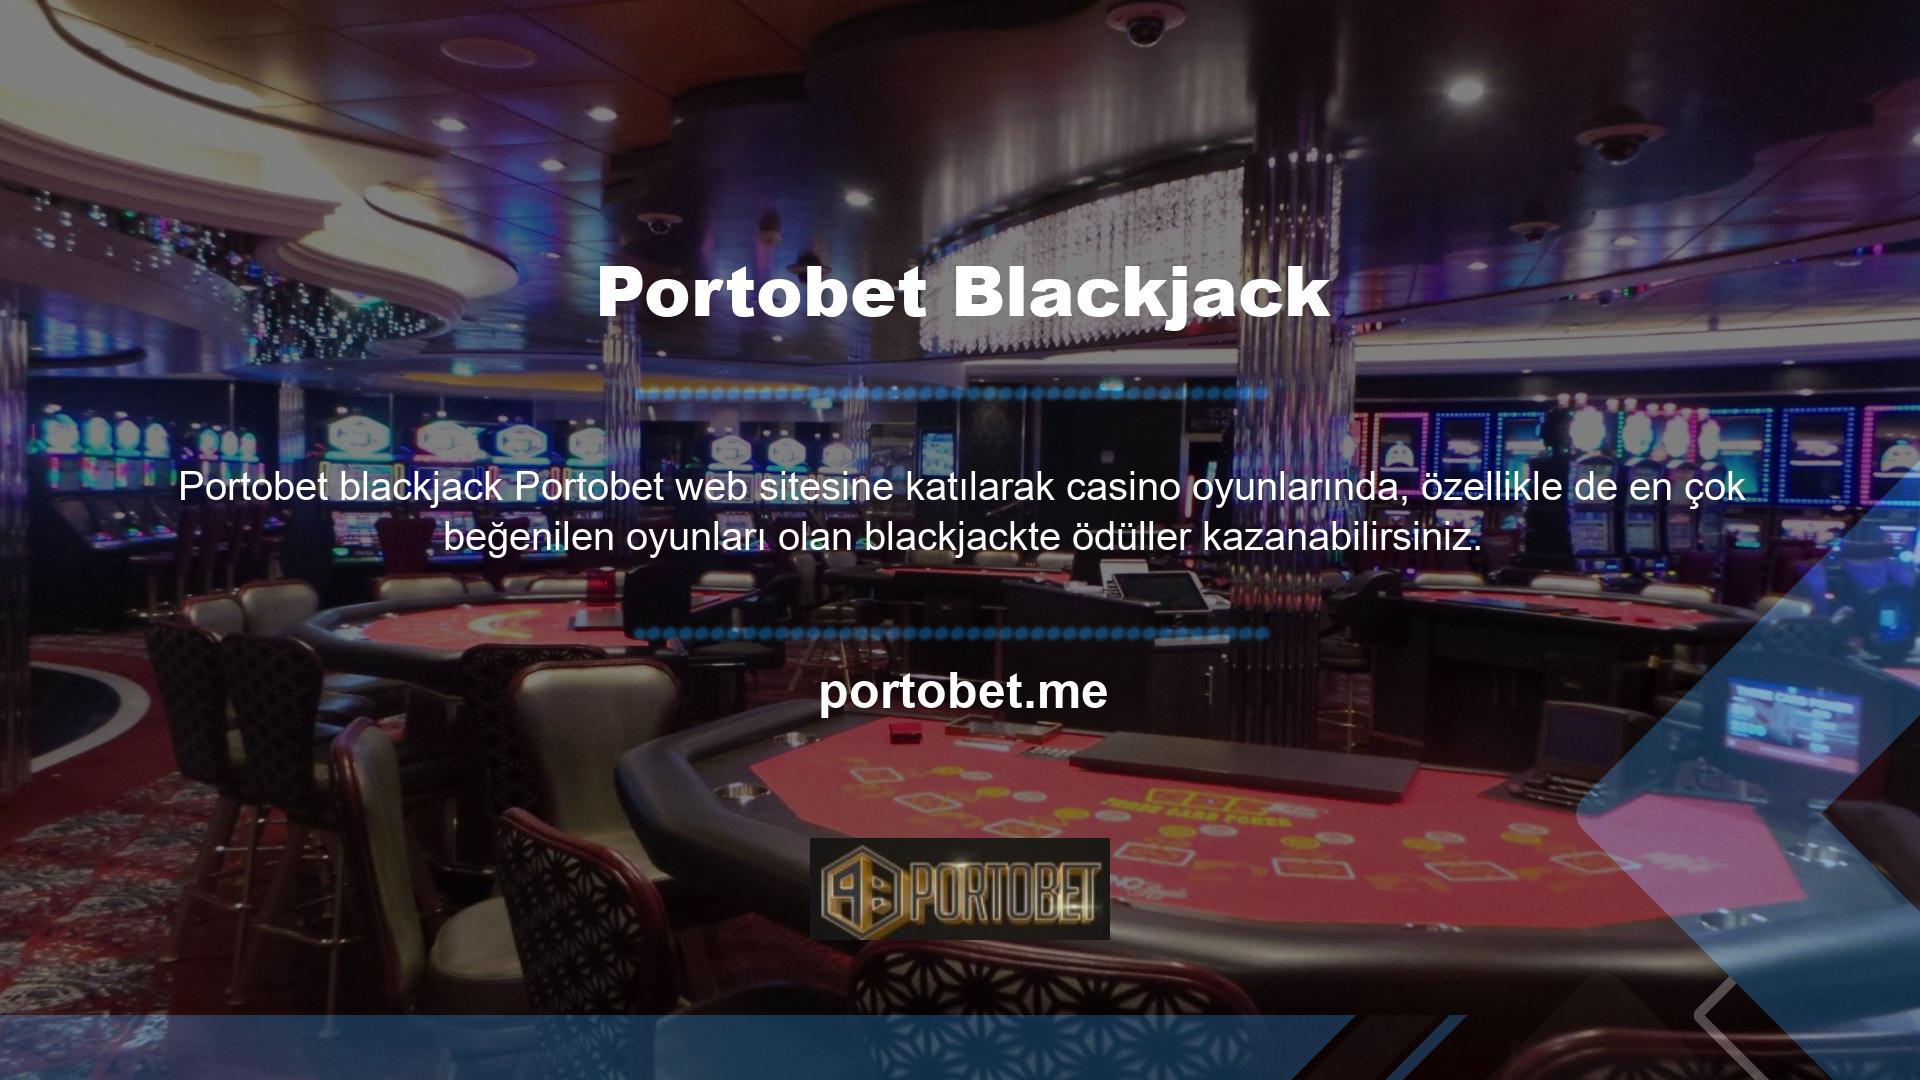 Blackjack Portobet bonusunuzu hesabınızdan para talebinde bulunarak alabilirsiniz